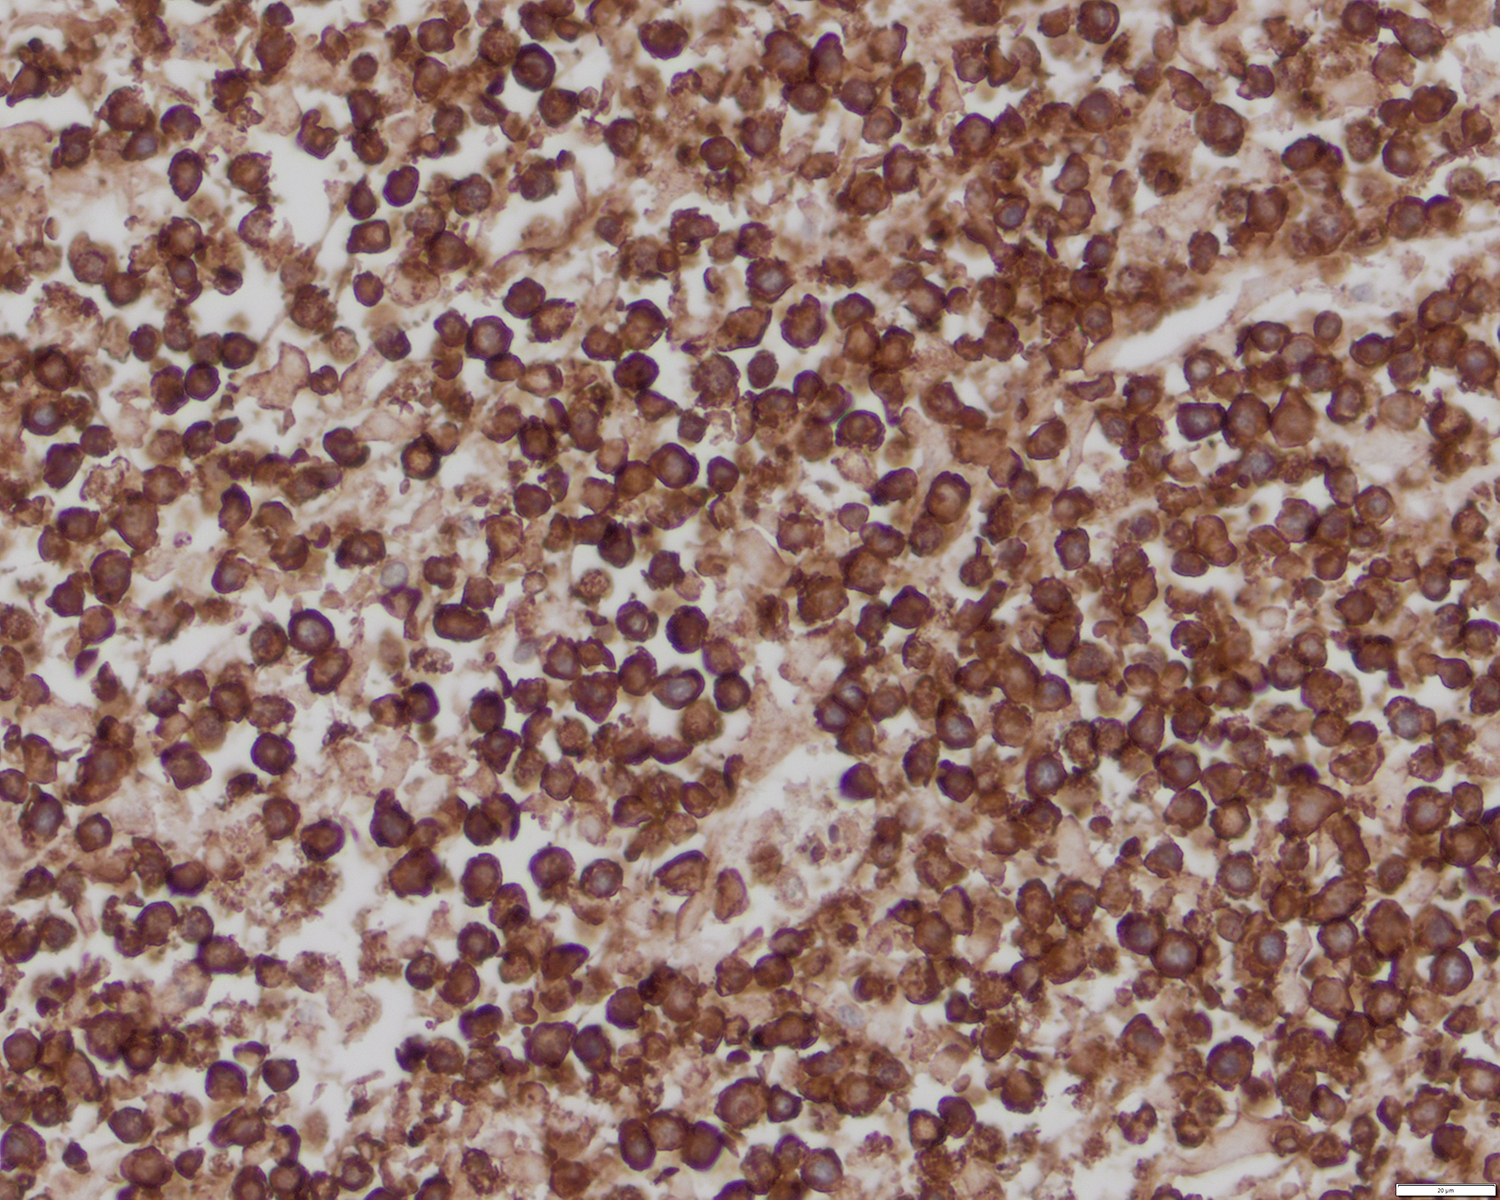 CD3 positive lymphoma cells